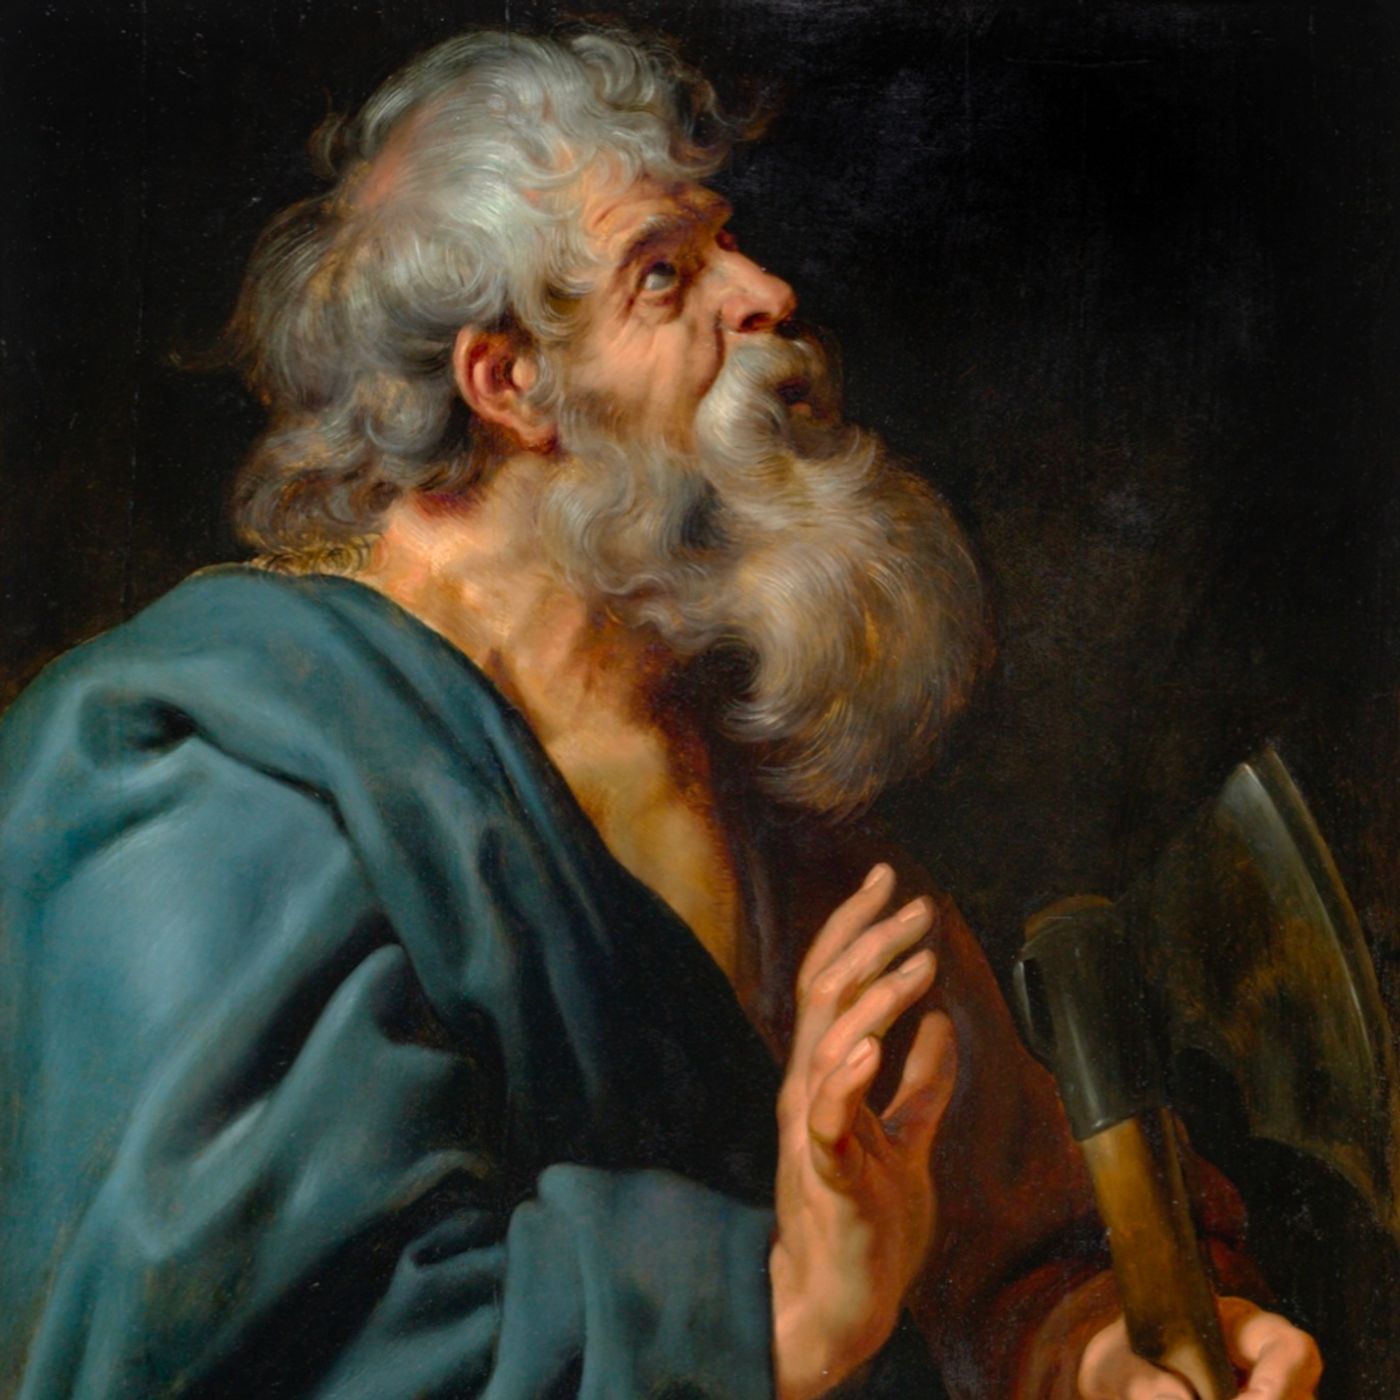 May 14: Saint Matthias, Apostle